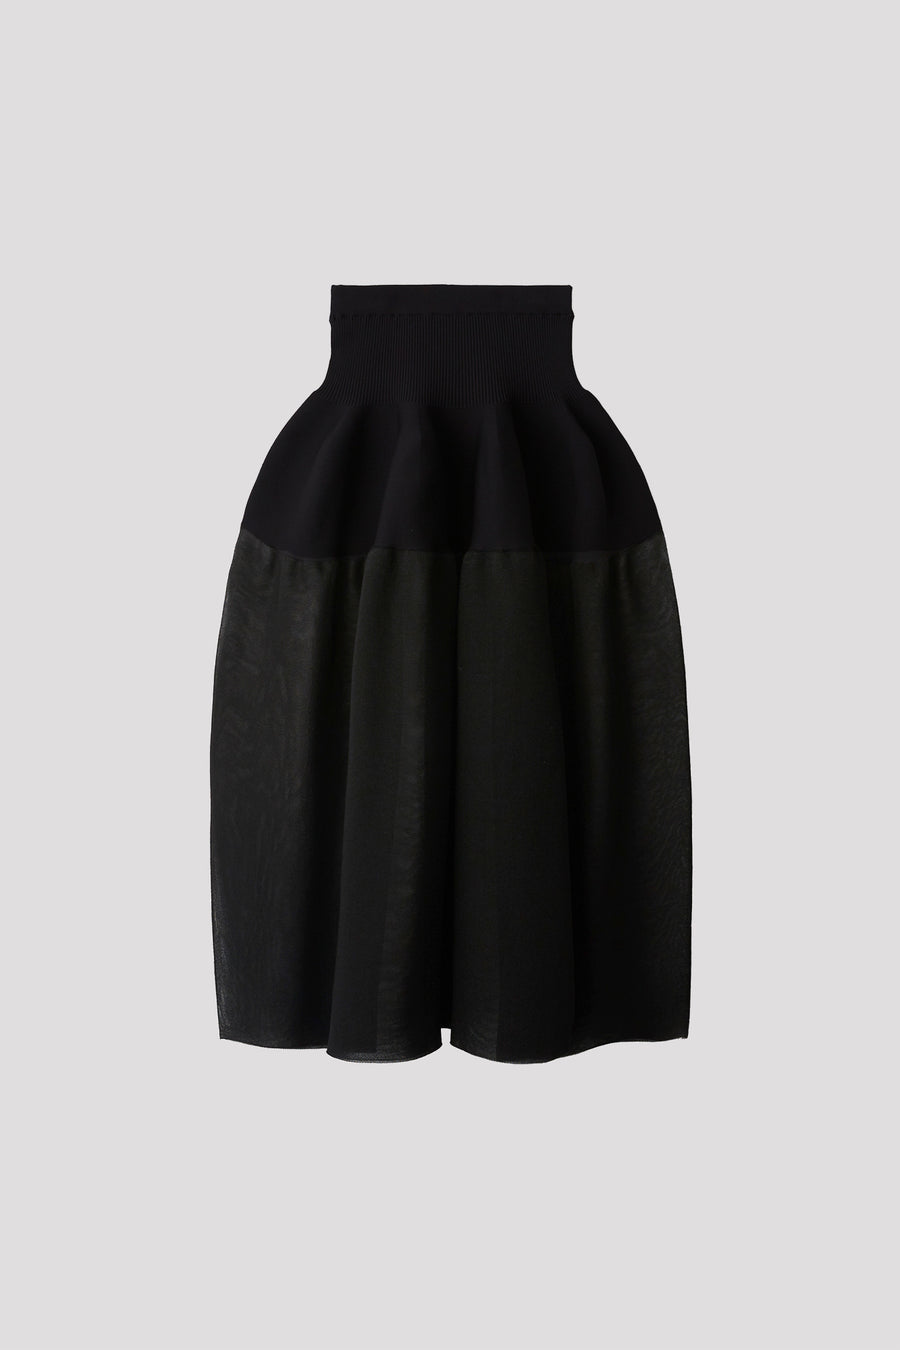 新品未使用 CFCL pottery skirt ブラック 1サイズ1